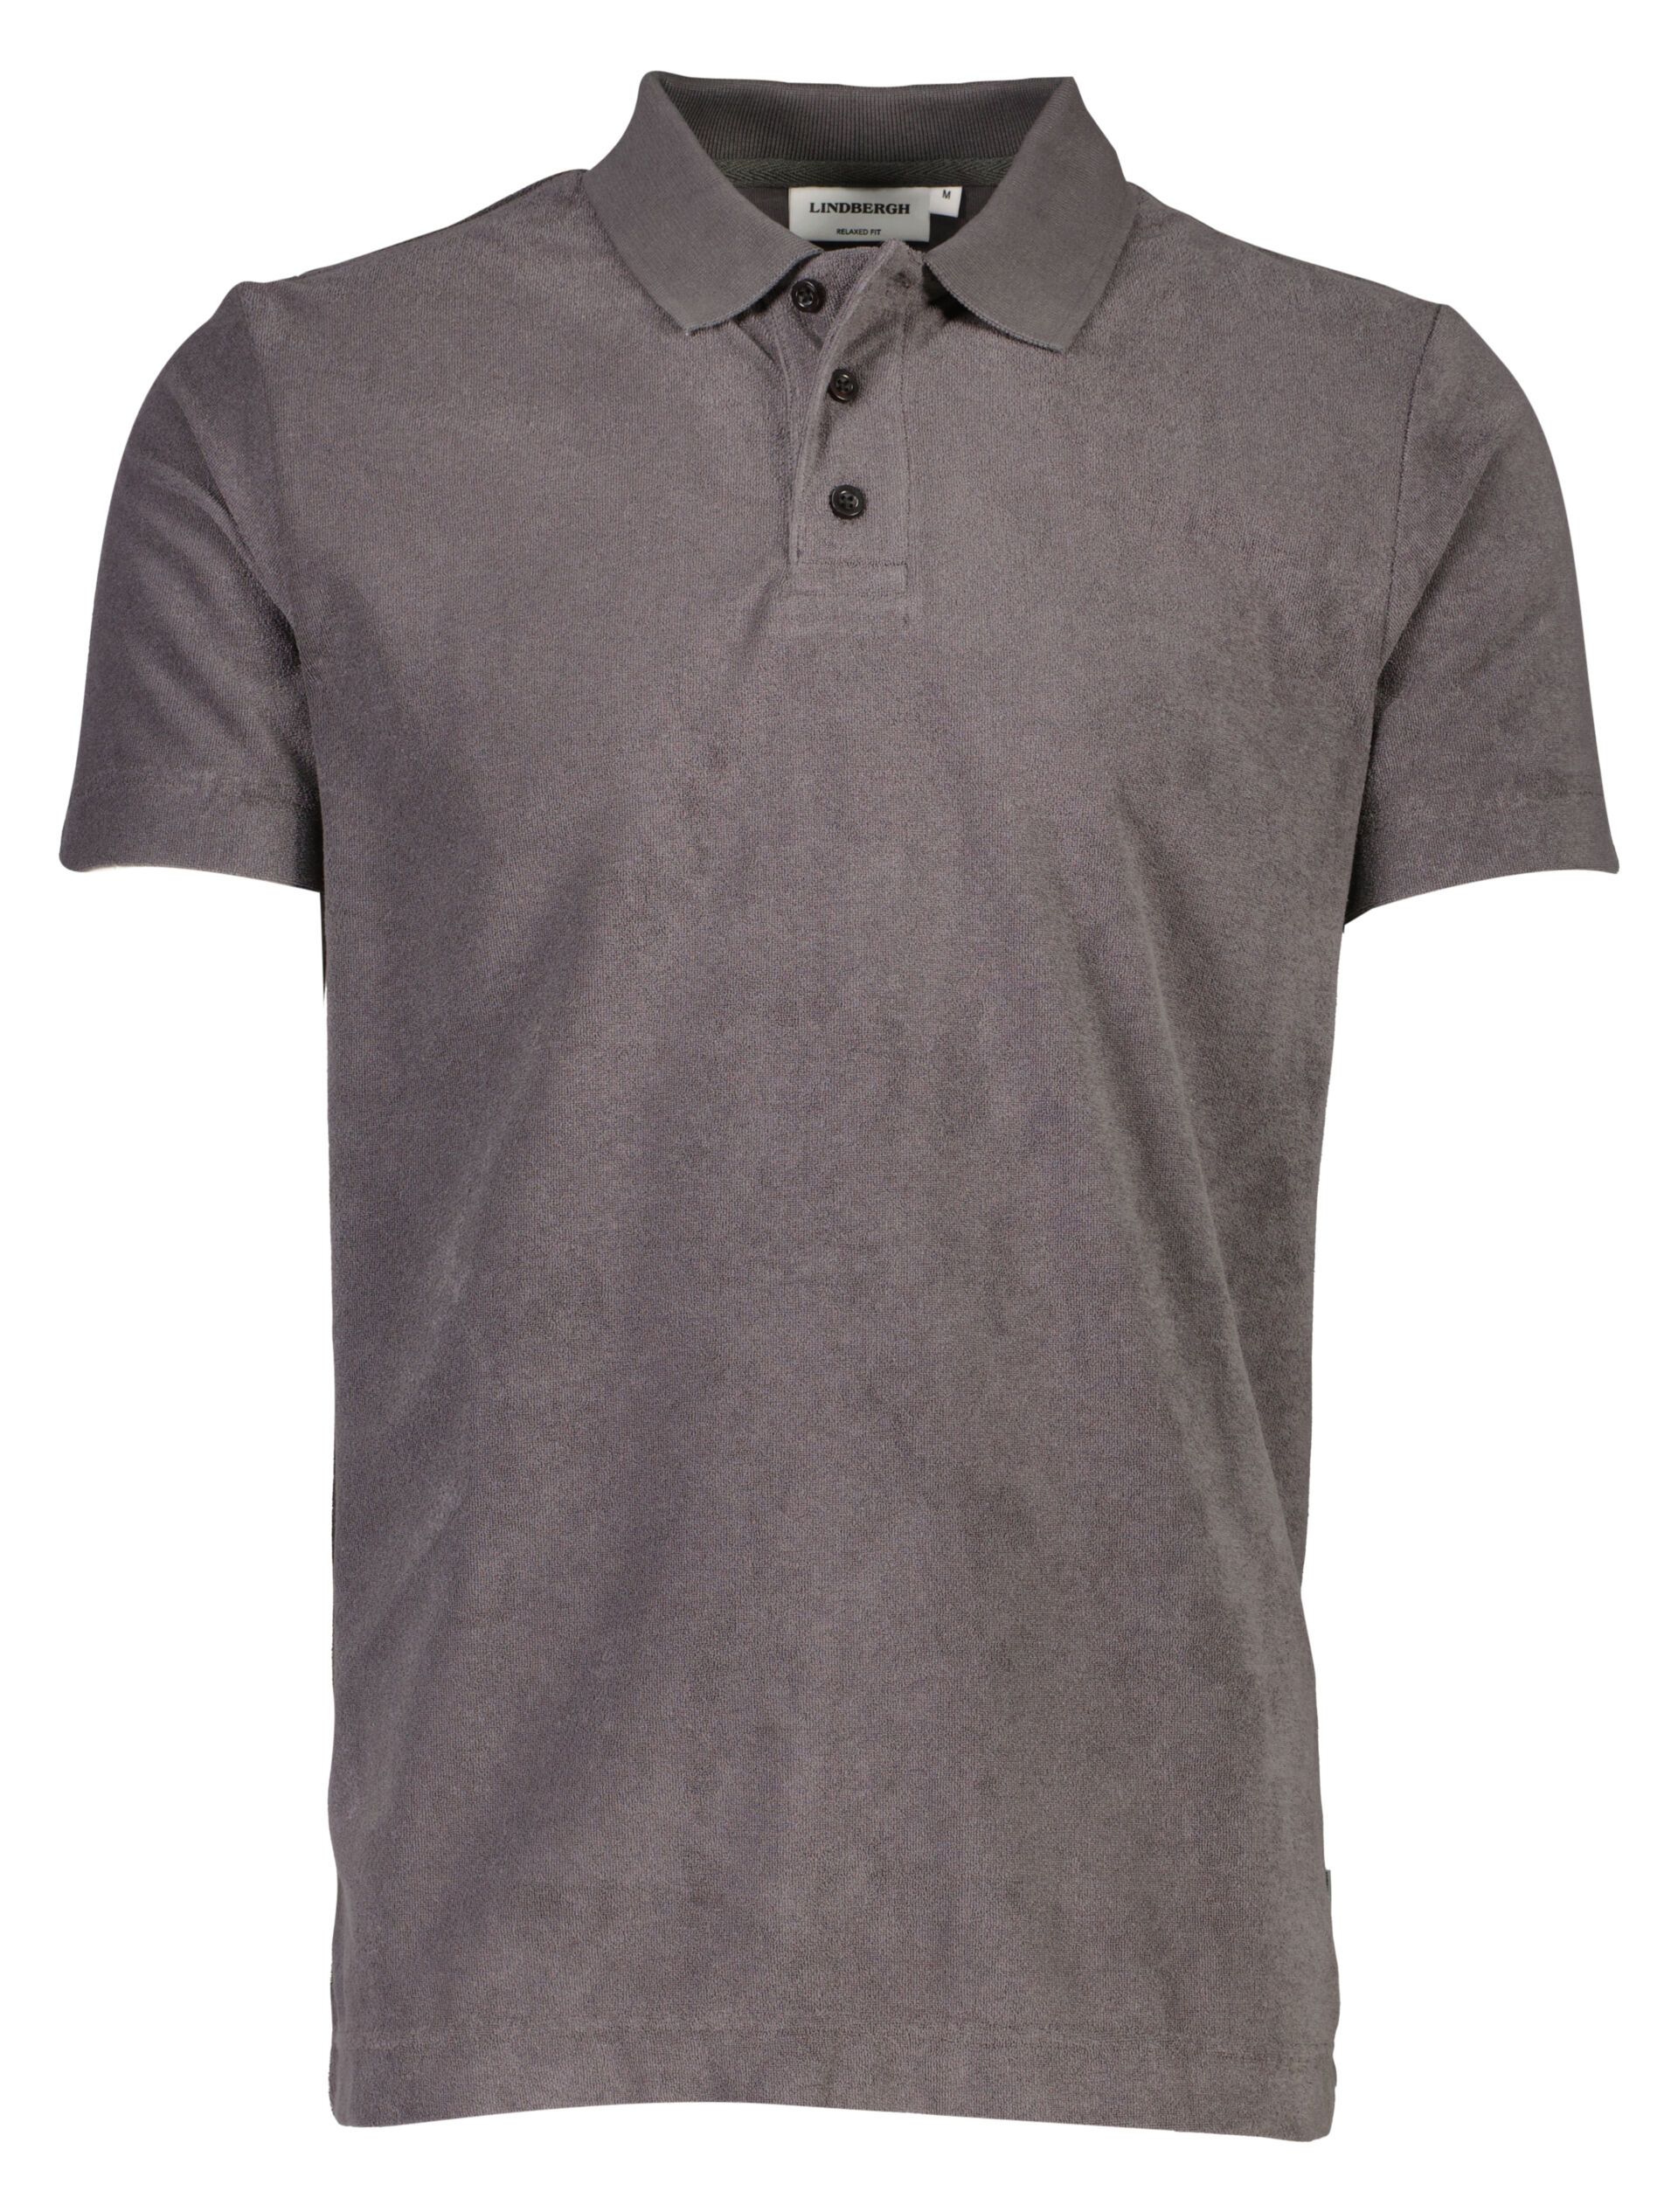 Polo shirt Polo shirt Grey 30-404263